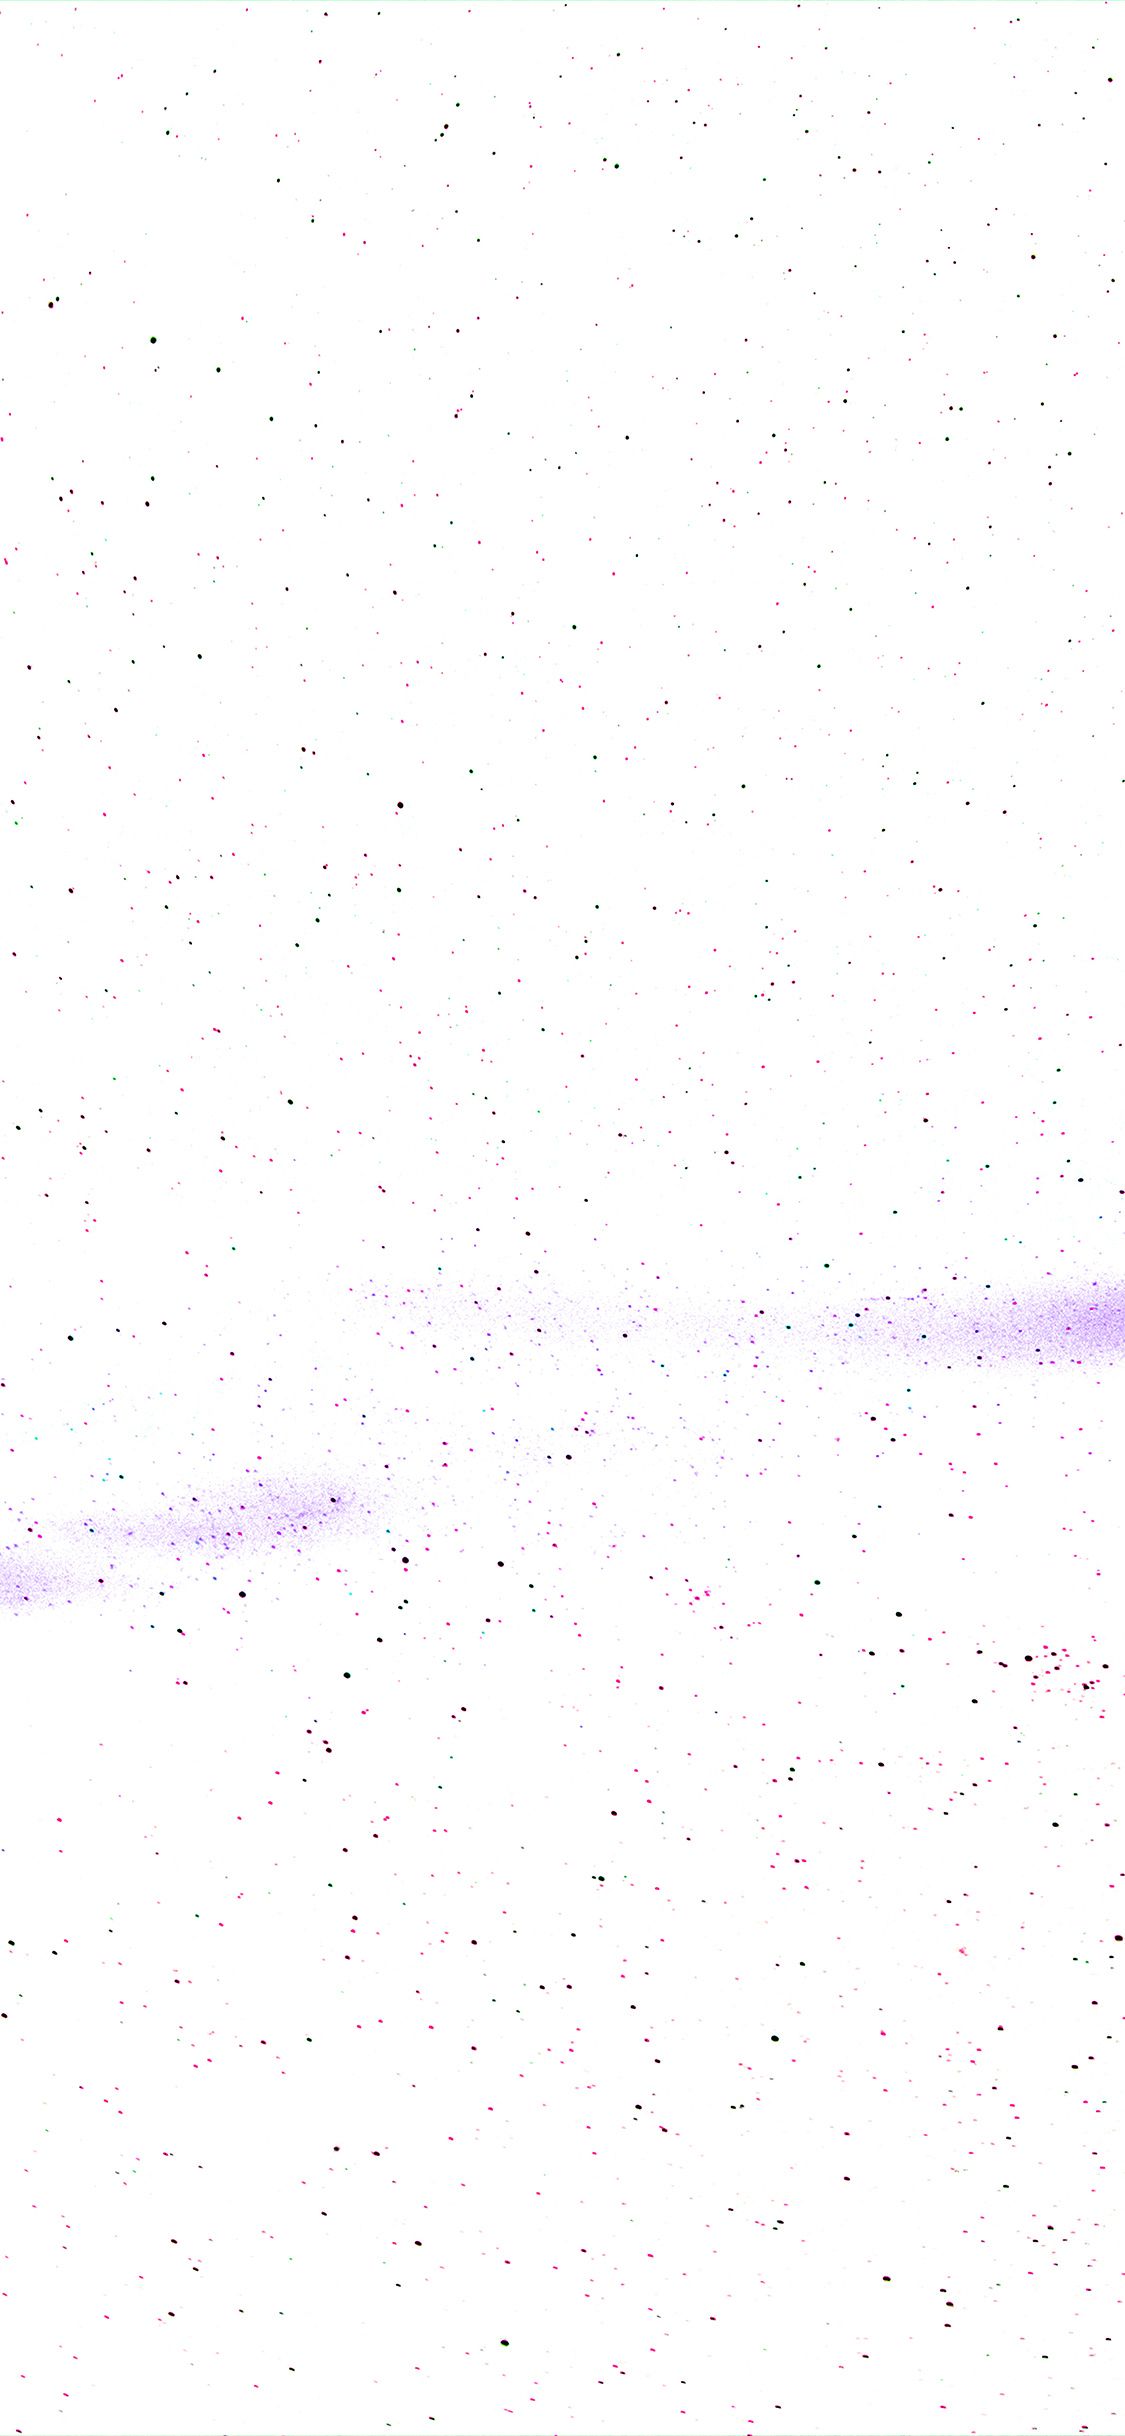 تصویر گرافیکی شیک با طرح نقطه رنگی در زمینه سفید